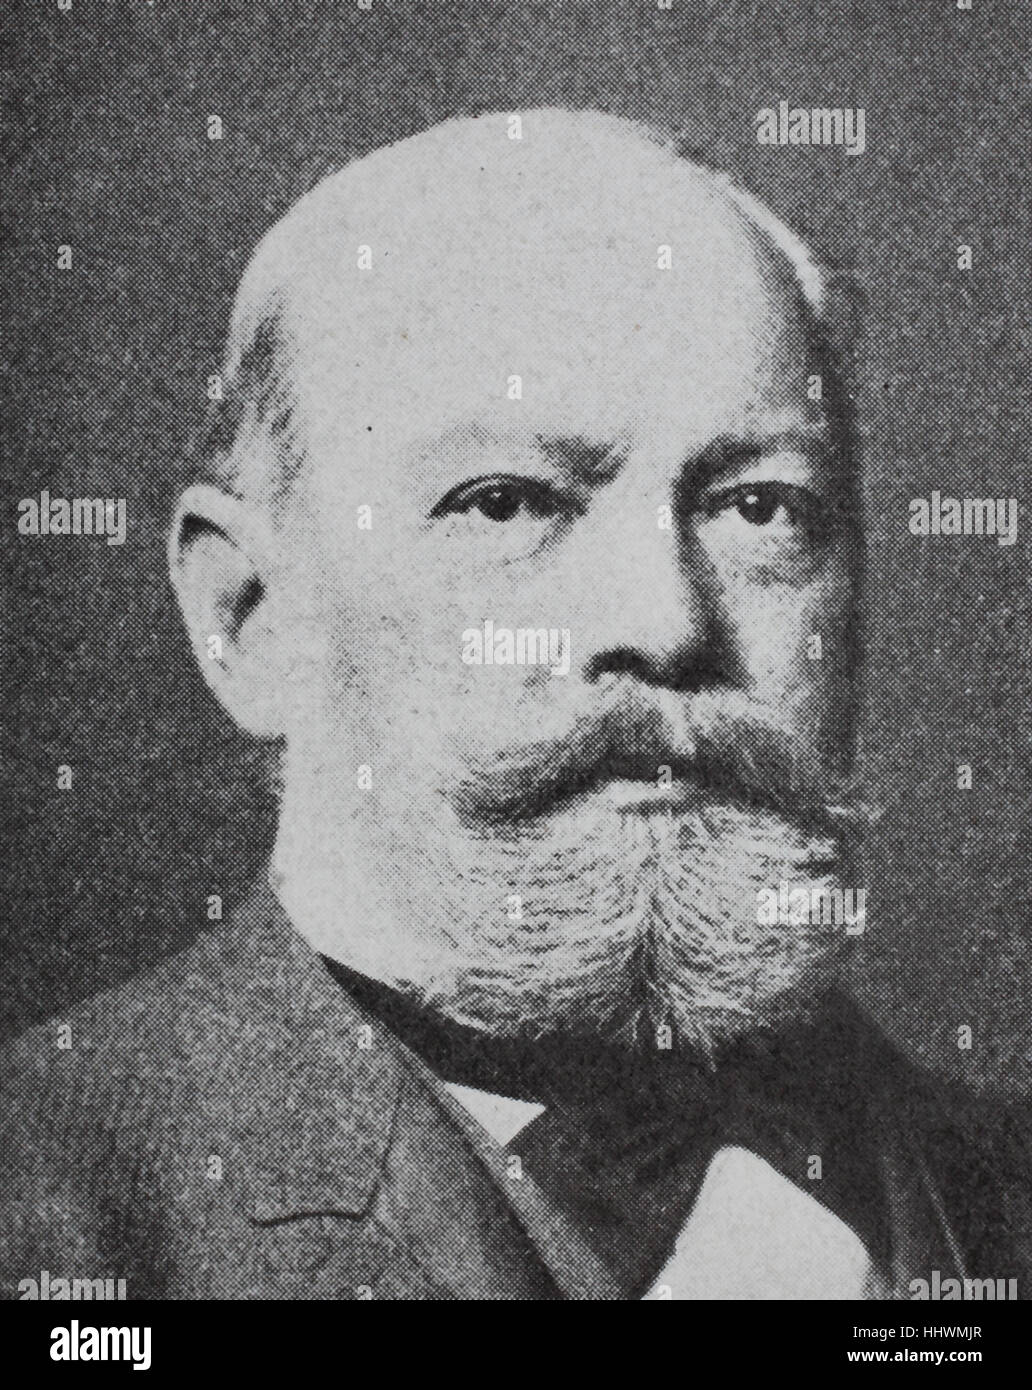 Carl Jakob Adolf Christian Gerhardt, 1833-1902, deutscher Internist, Geschichtsbild oder Illustration, veröffentlicht 1890, digital verbessert Stockfoto